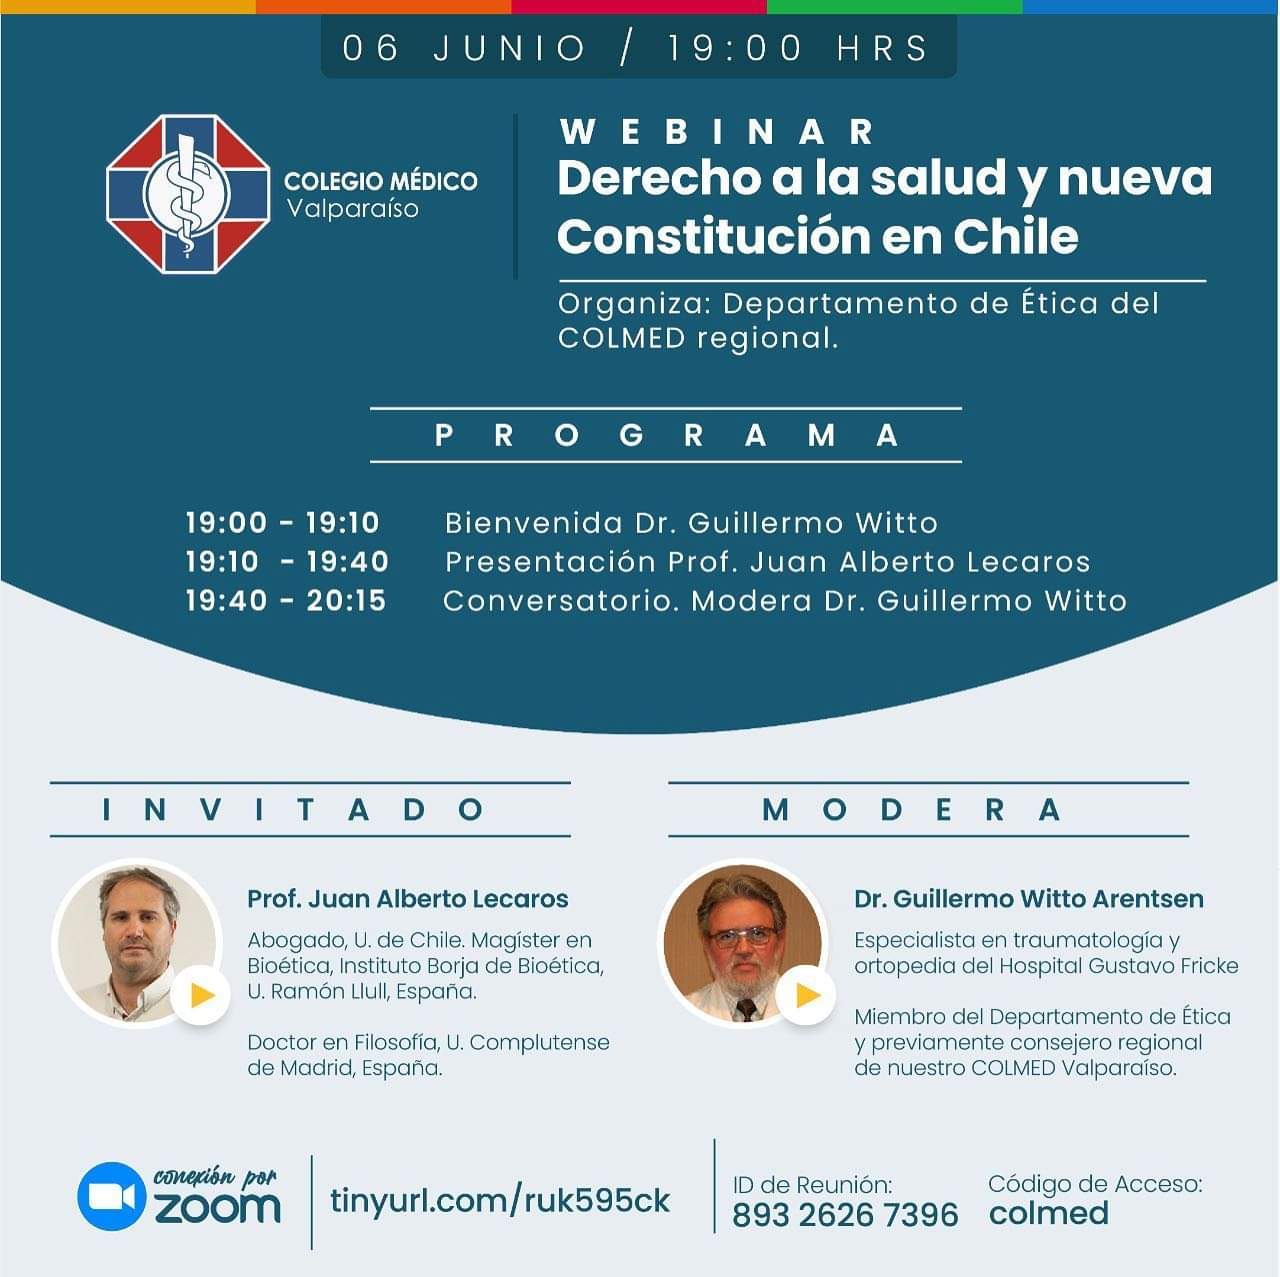 Colegio Médico Valparaíso invita a conversatorio "Derecho a la Salud y nueva Constitución en Chile"